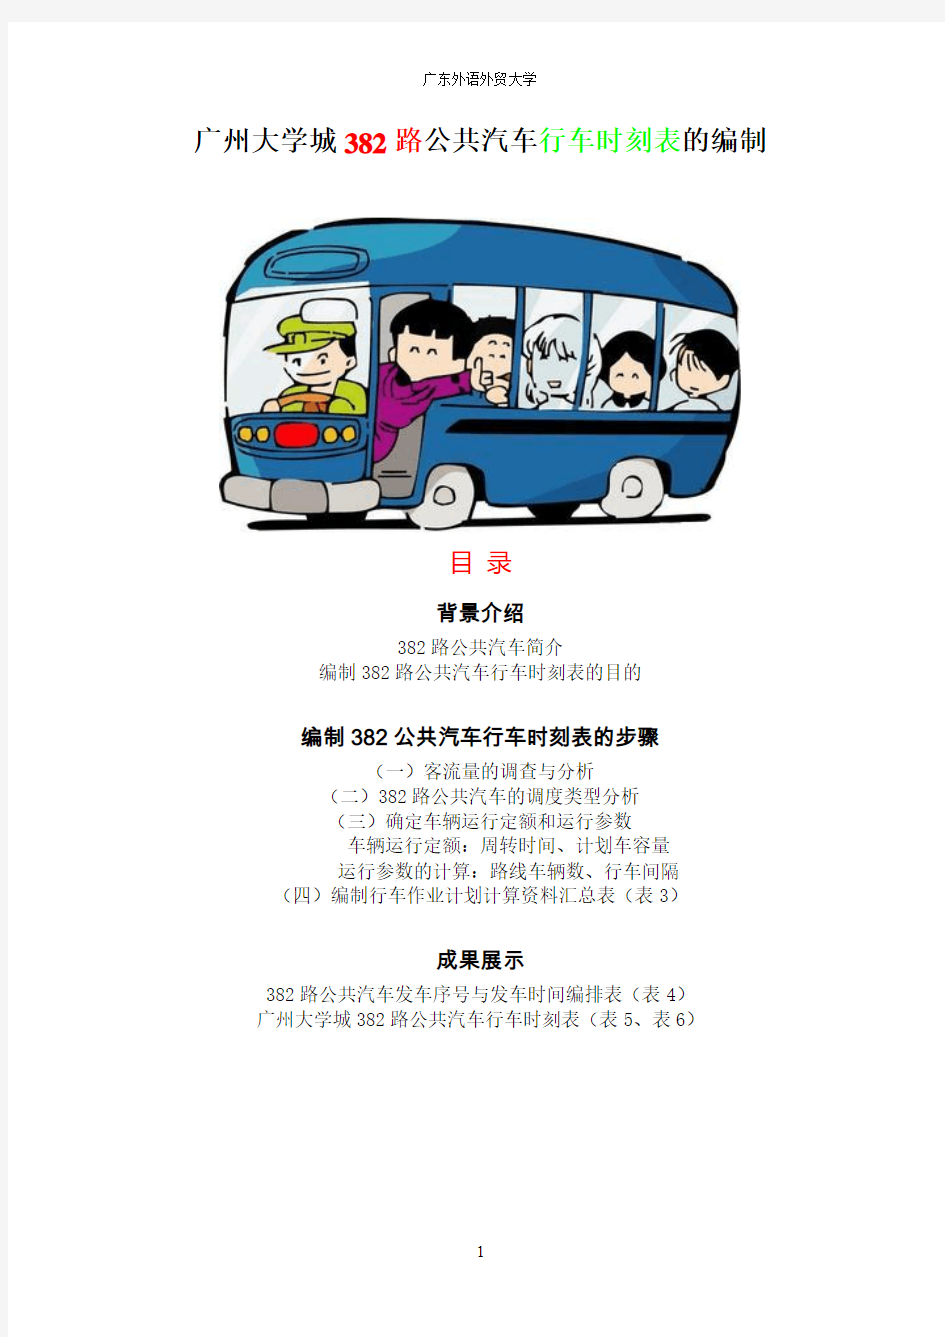 广州大学城382路公共汽车行车时刻表的编制